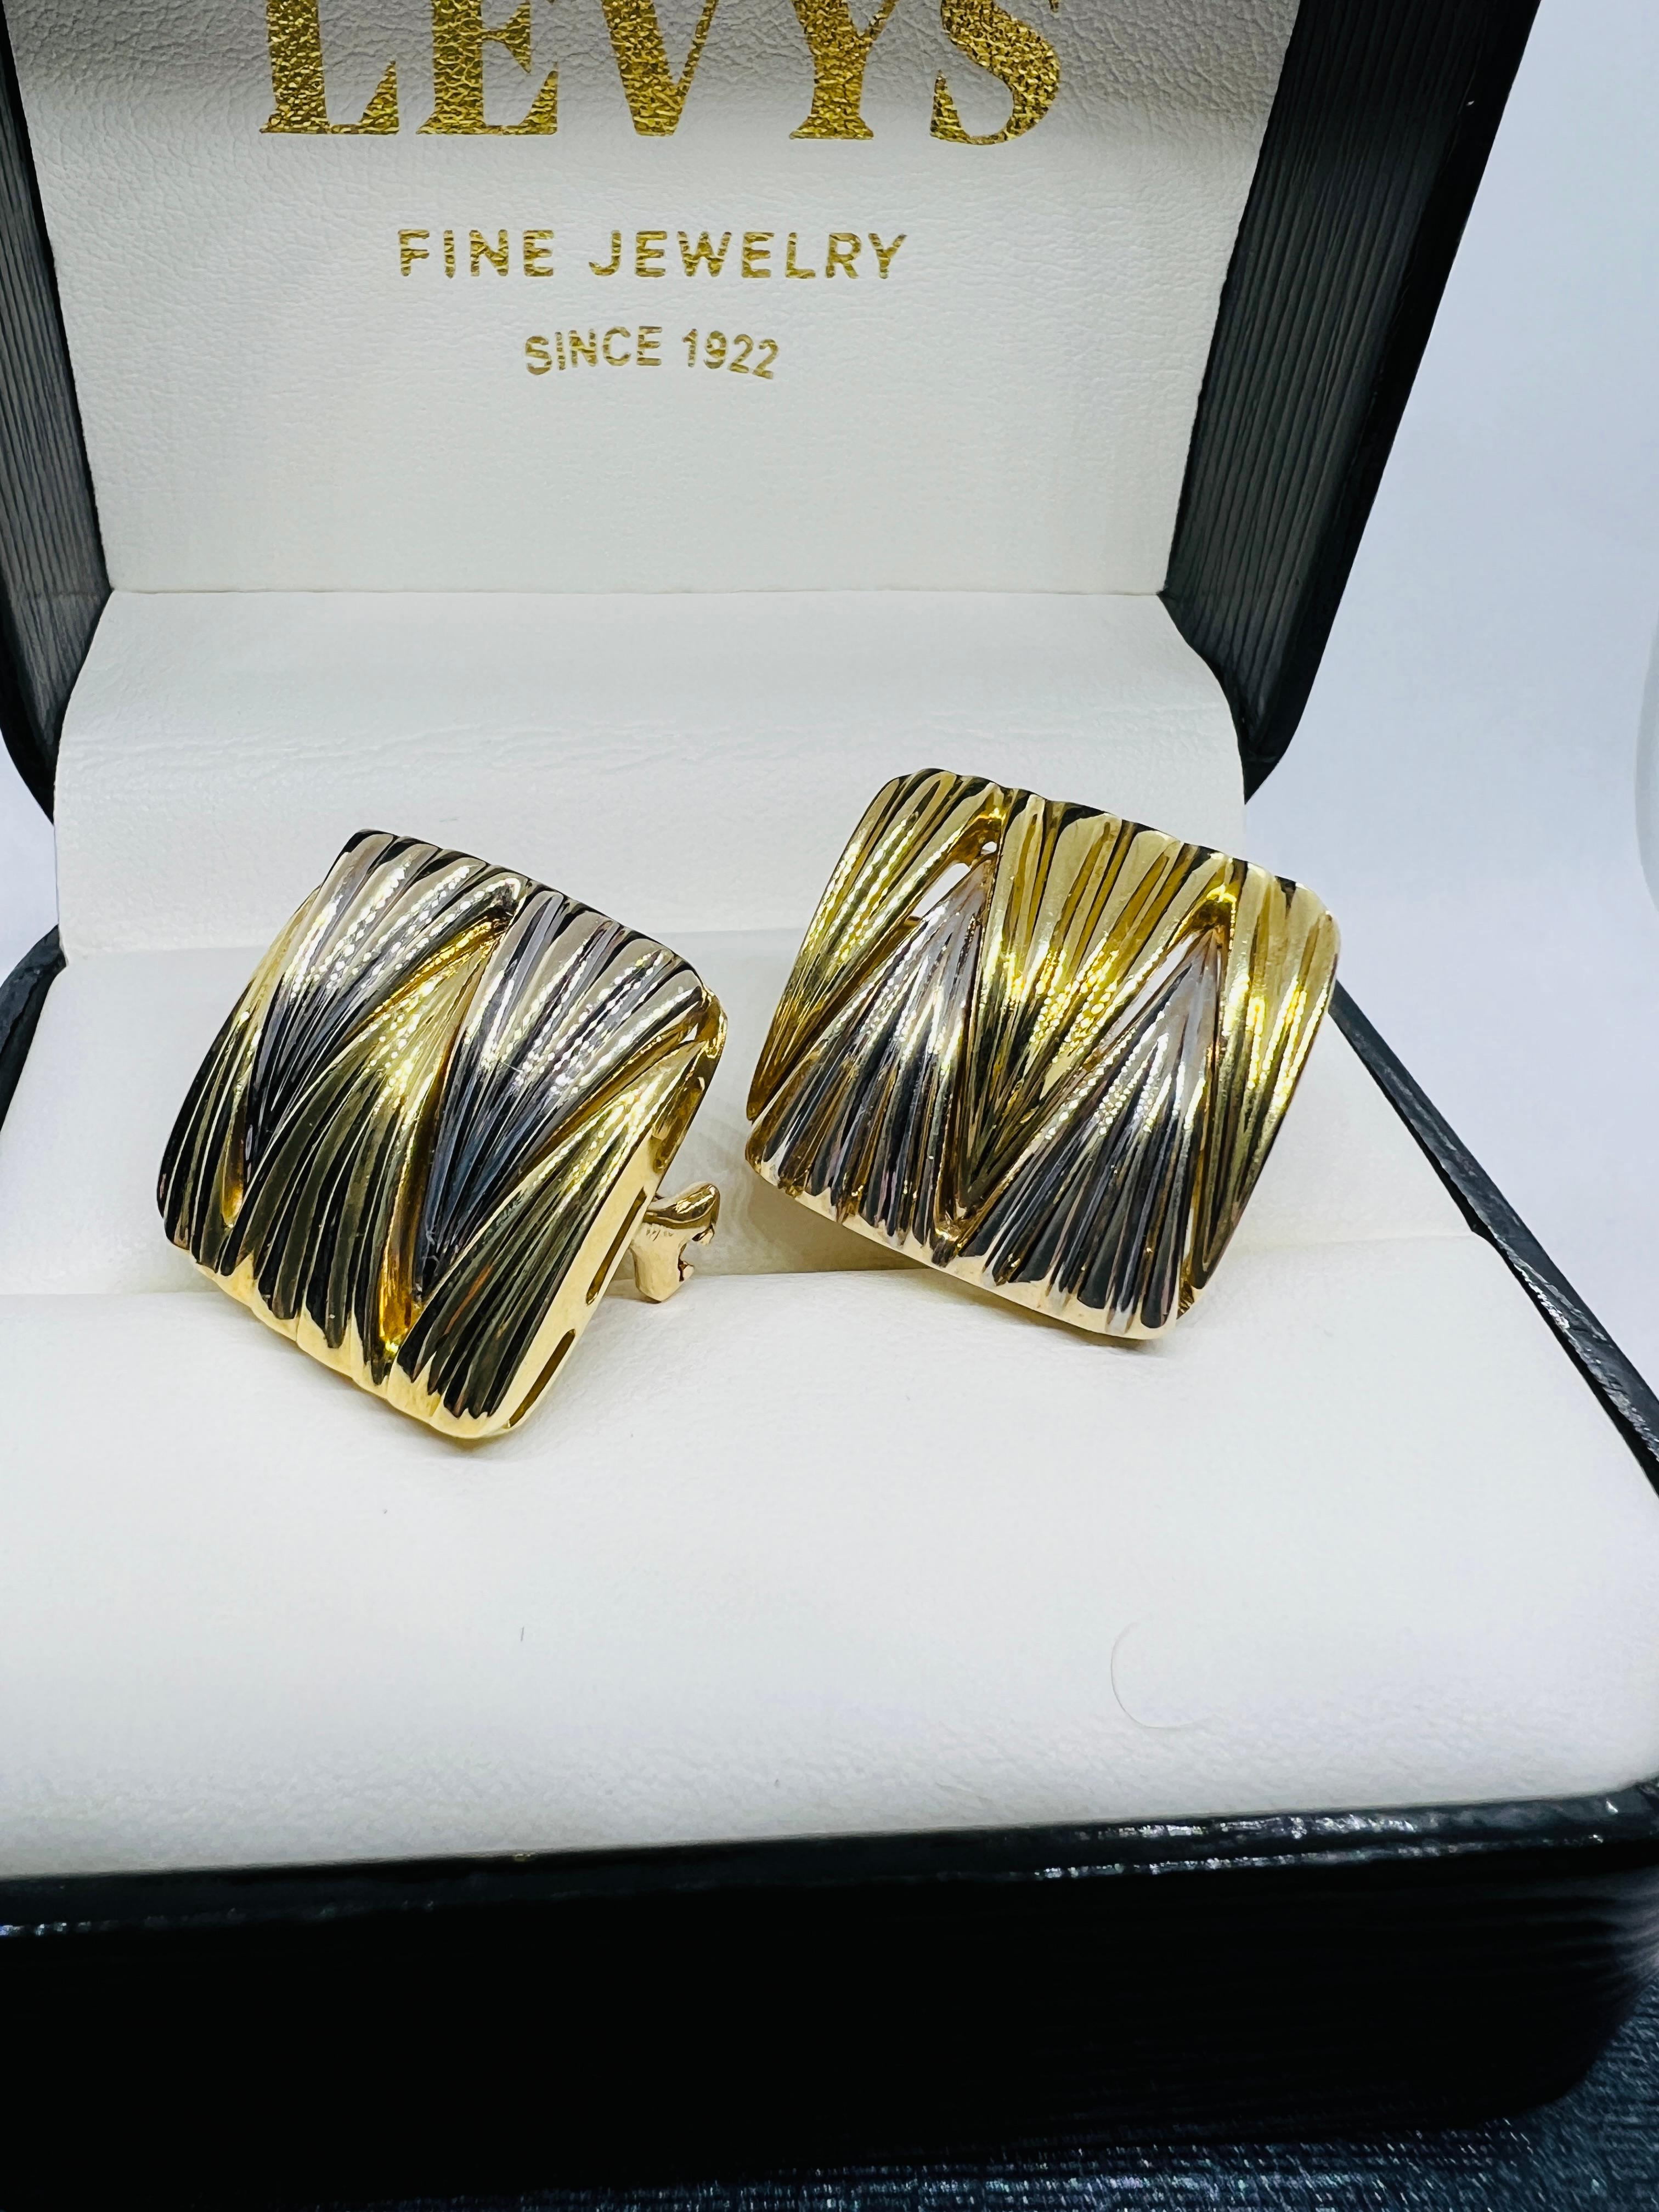 Absolut atemberaubende Designer Michael Bondanza Square Huggie Ohrringe! Sie sind drei Viertel Zoll groß und wiegen 19,5 Gramm. Sie bestehen aus 18 Karat Gelbgold und Platin, die in einem skurrilen Zickzack-Muster miteinander verwoben sind.